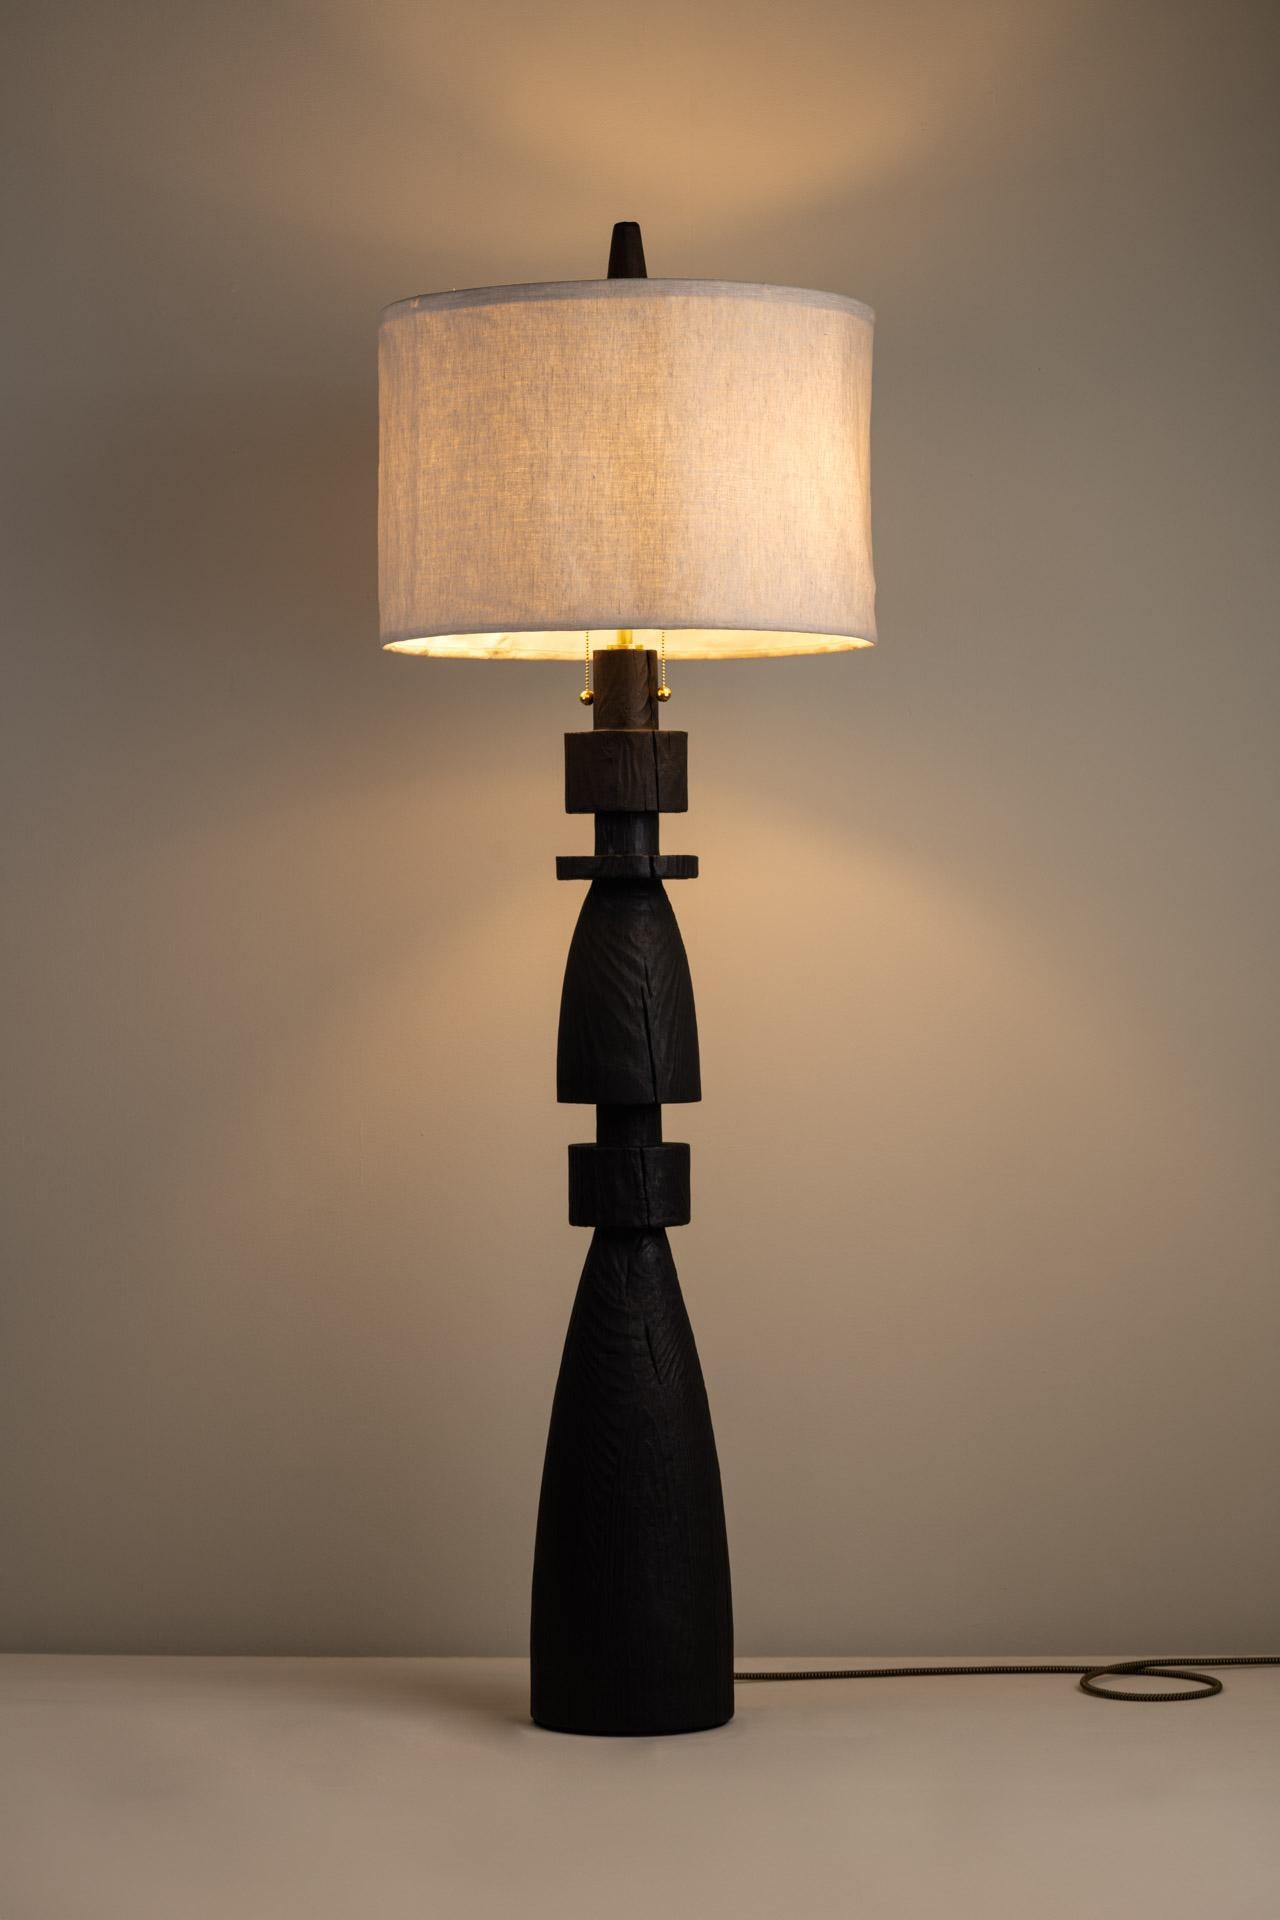 Le lampadaire MEZQUITE (LARGE) a été conçu pour la collection De Palo de l'artiste mexicaine Isabel Moncada.

Tel un fou aux échecs, Mezquite s'impose de manière éclatante. Sa base en bois est robuste, sa finition sombre lui donne beaucoup de